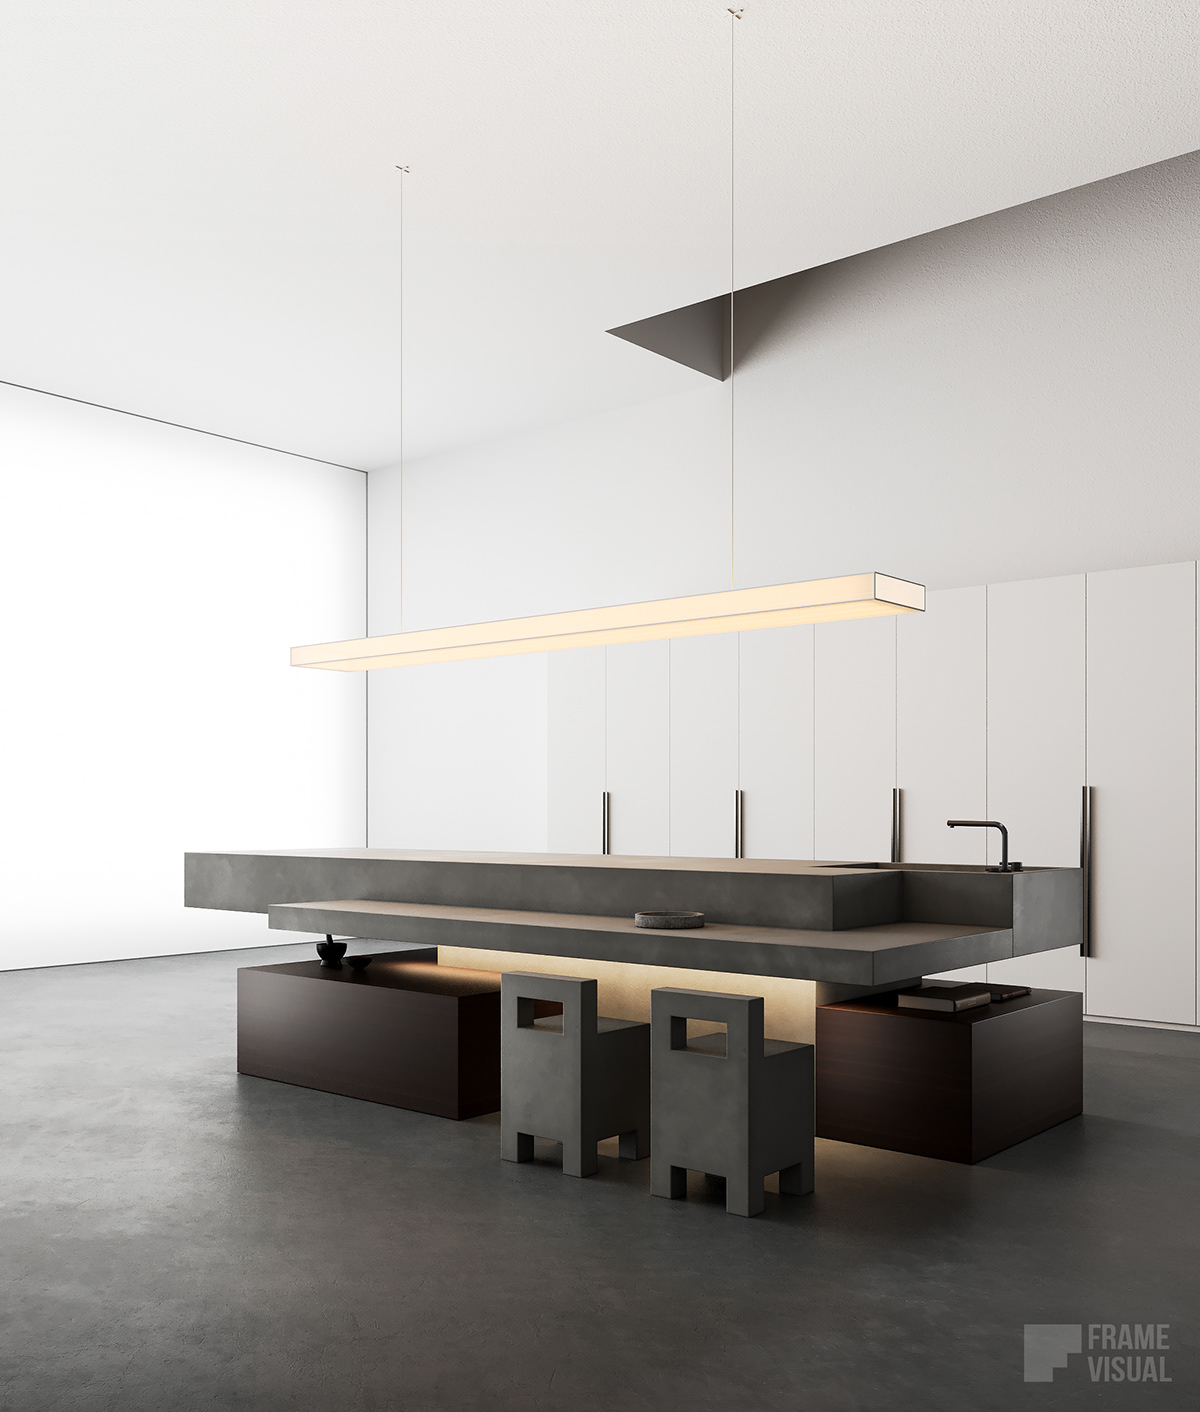 interior design  archviz 3ds max corona render  Modern Design CGI visualization kitchen design Minimalism modern